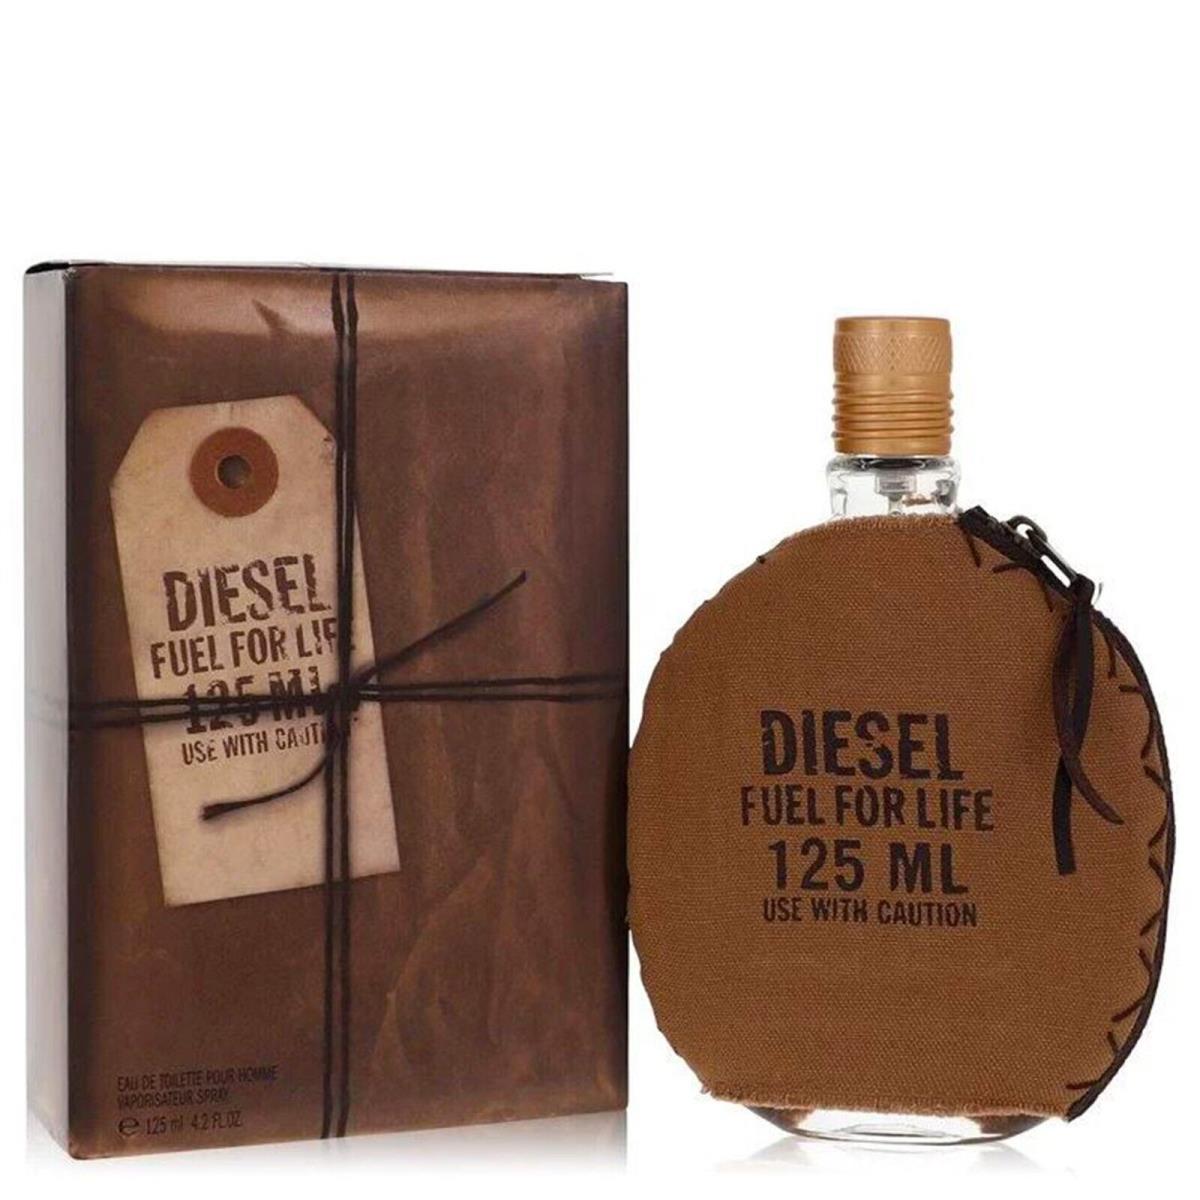 Fuel For Life Cologne by Diesel Men Perfume Eau De Toilette 4.2 oz 125 ml Spray